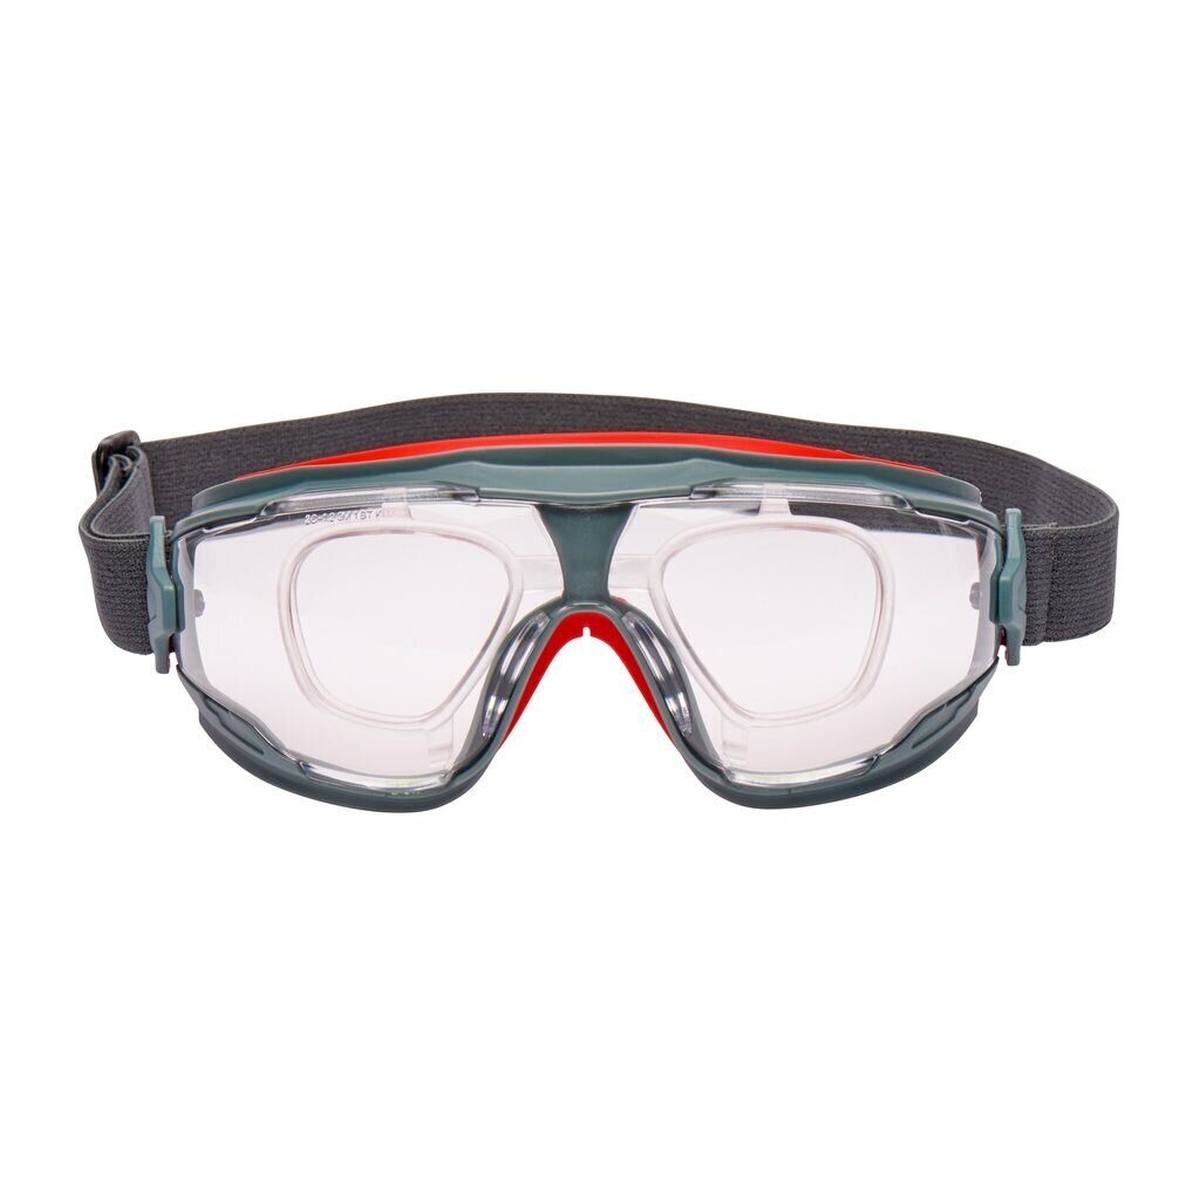 Gafas de visión total 3M GoggleGear 500 GG501V, lente transparente, Scotchgard antivaho, UV